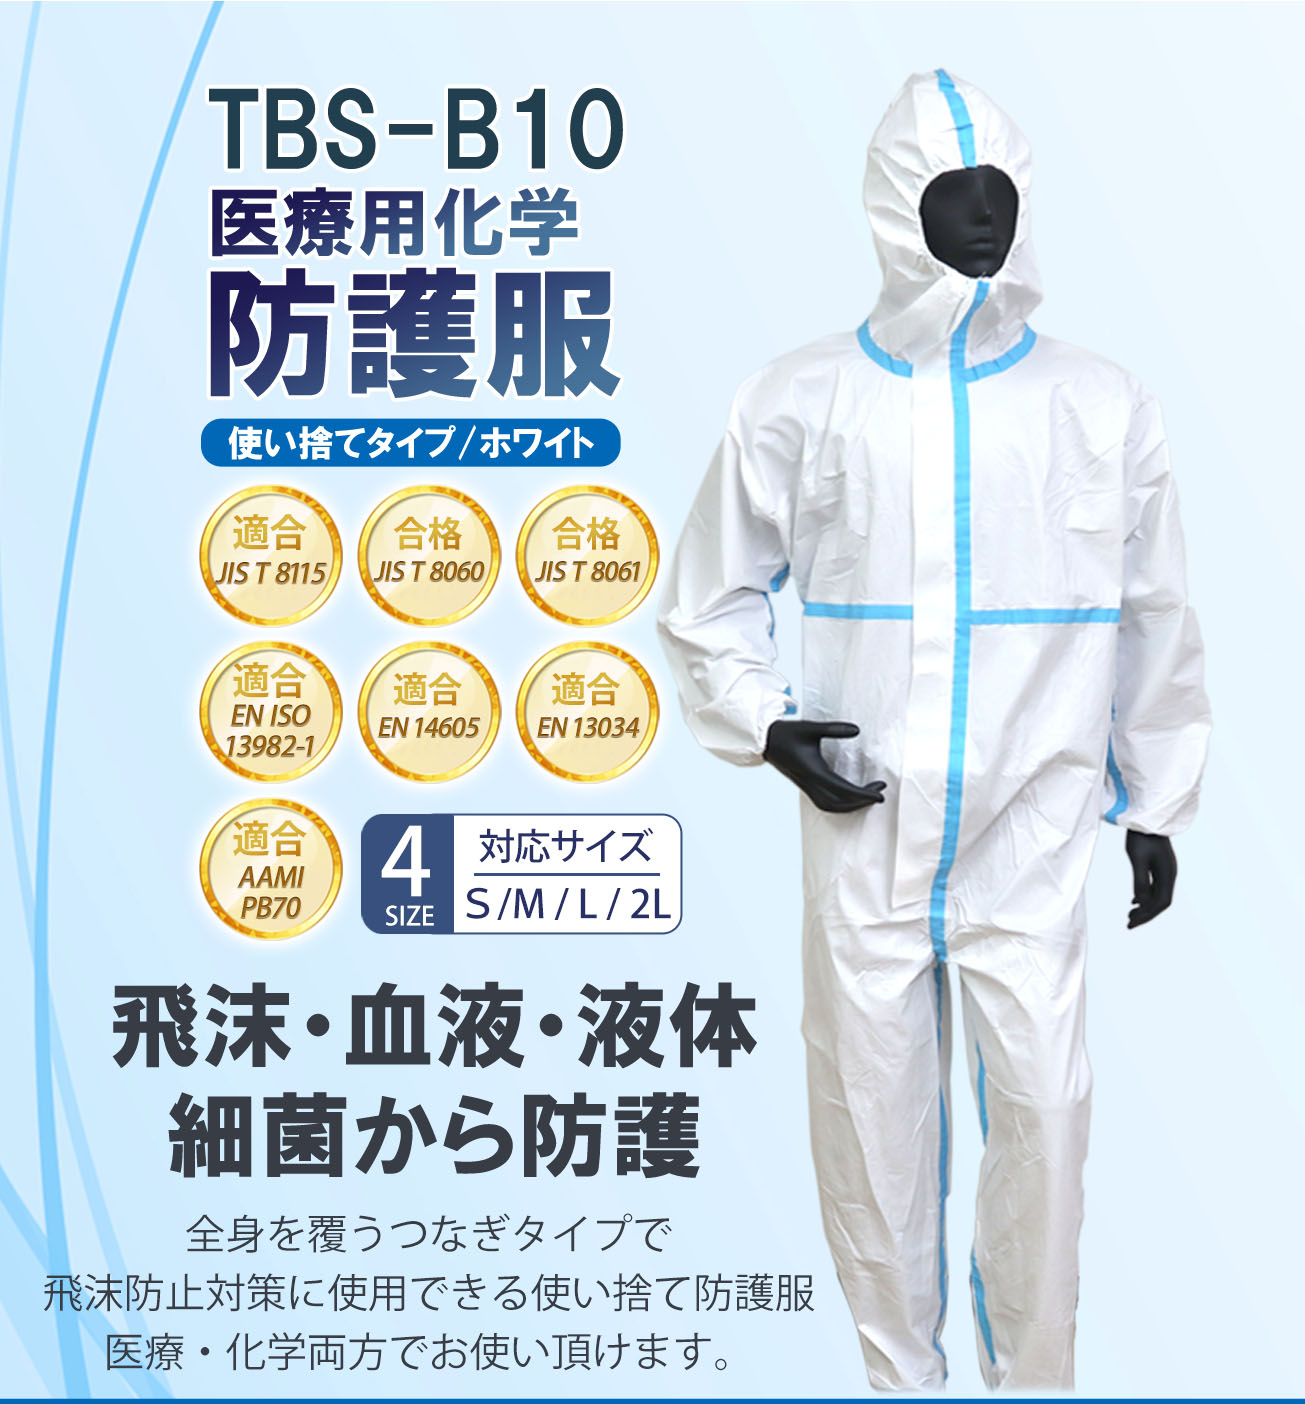 【つばさ】TBS-B10 医療用化学 防護服 Lサイズ 医療用 不織布 ウイルス 滅菌 個包装 白 使い捨て 病院 Tsubasa